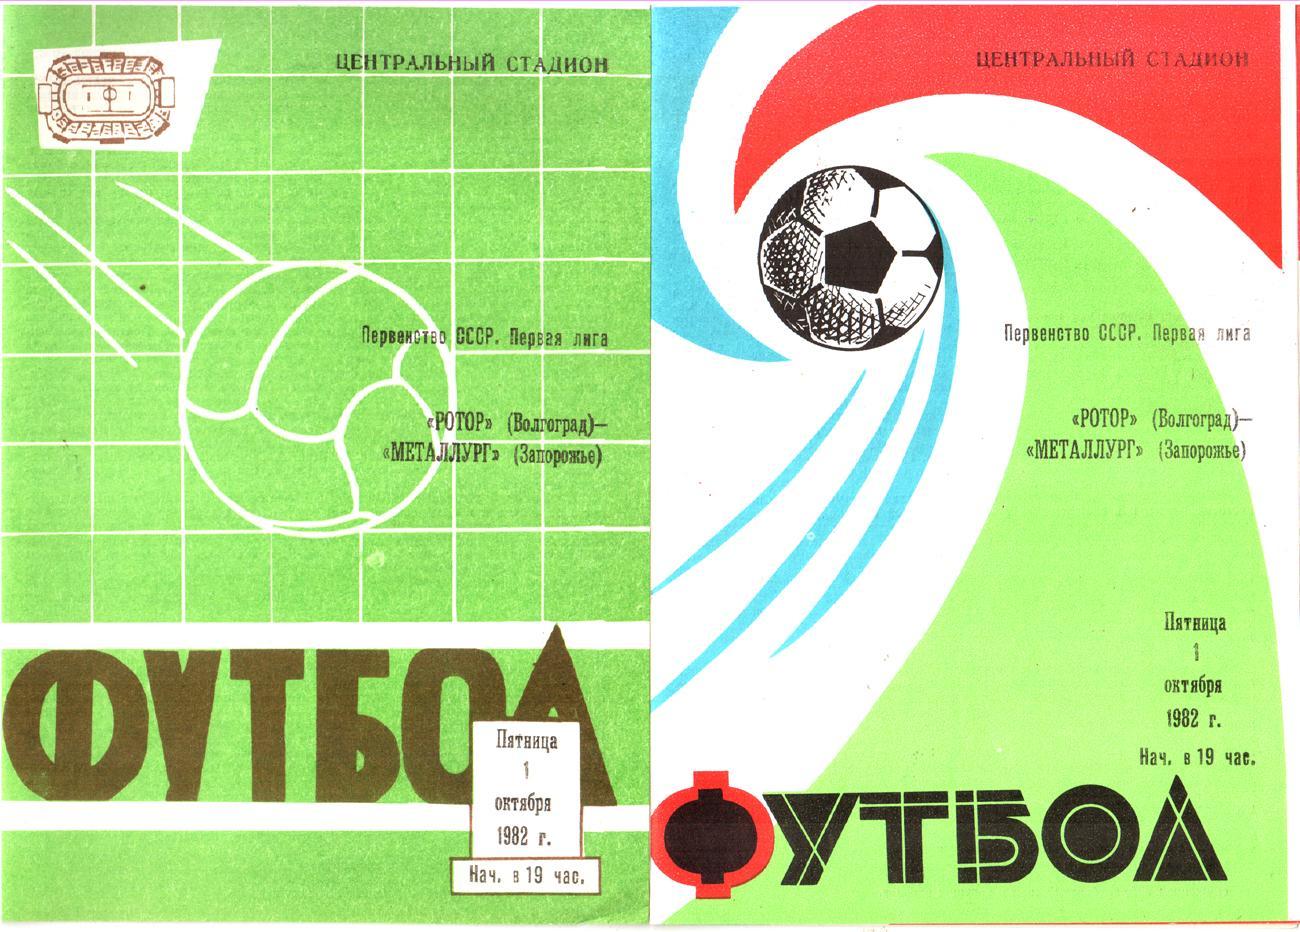 Ротор (Волгоград) - Металлург (Запорожье) 1982 Два вида